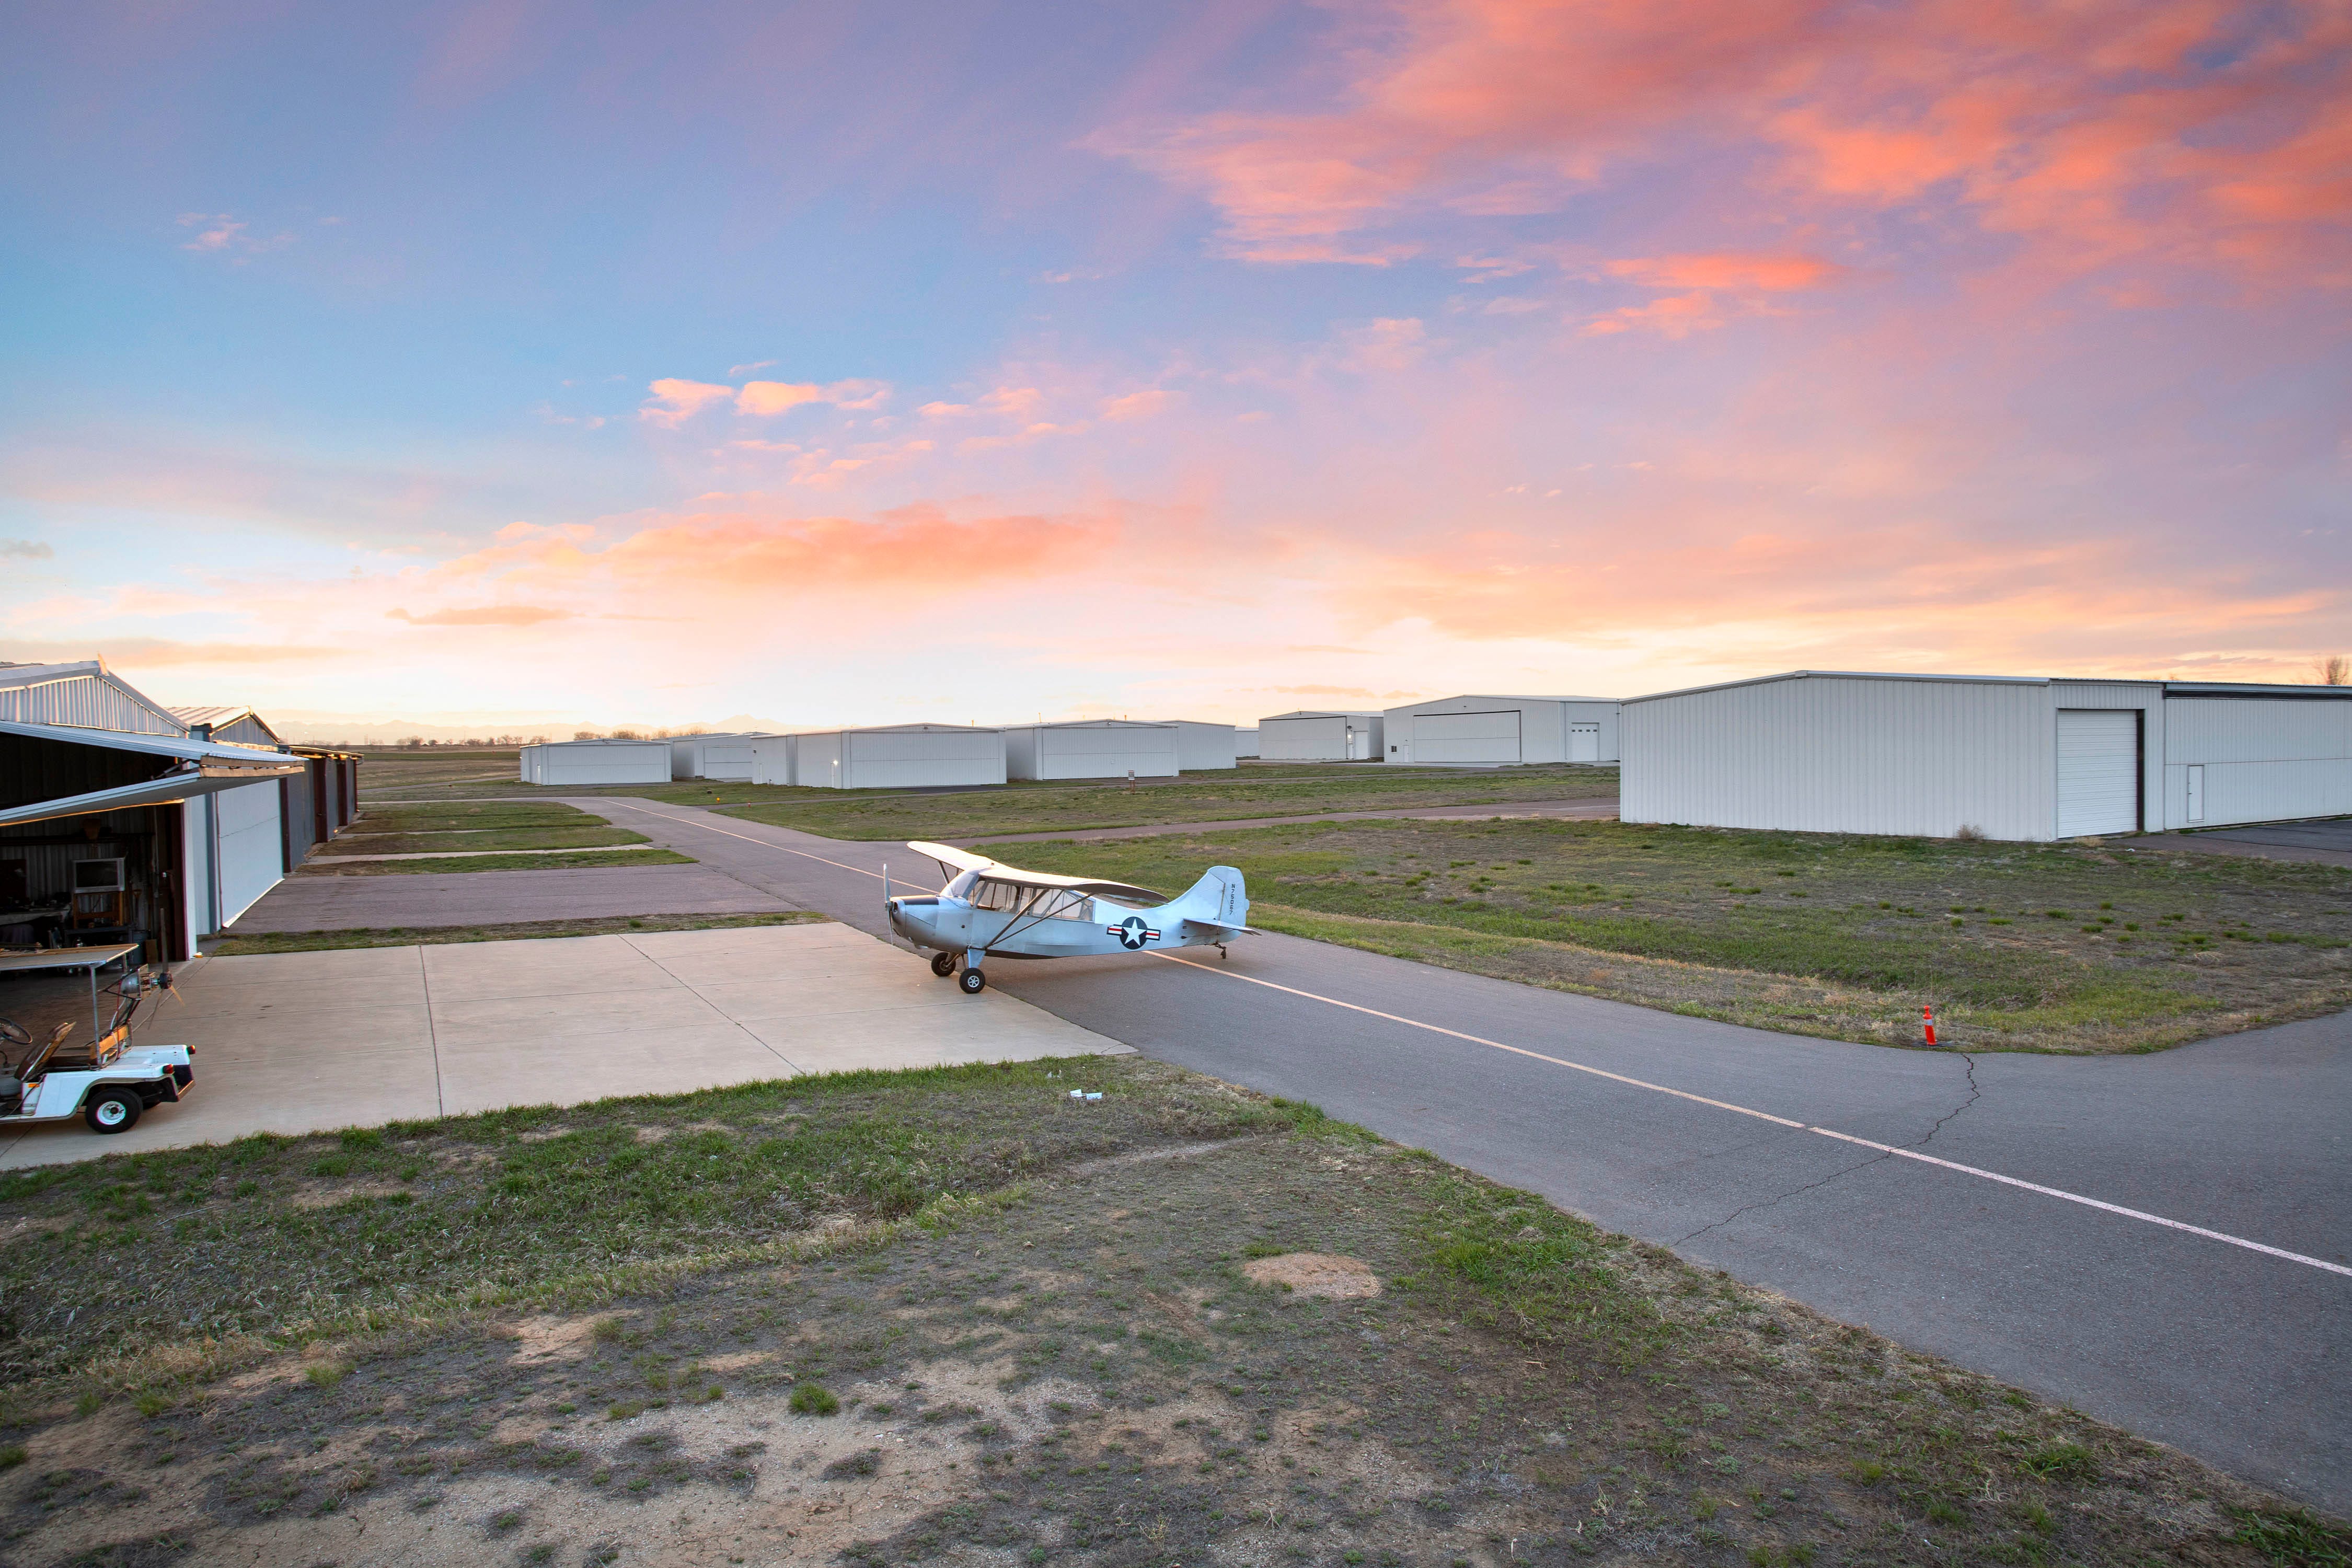 Rosa Wolken am Himmel bei Sonnenuntergang über einem Flugzeug, das auf der Landebahn geparkt ist